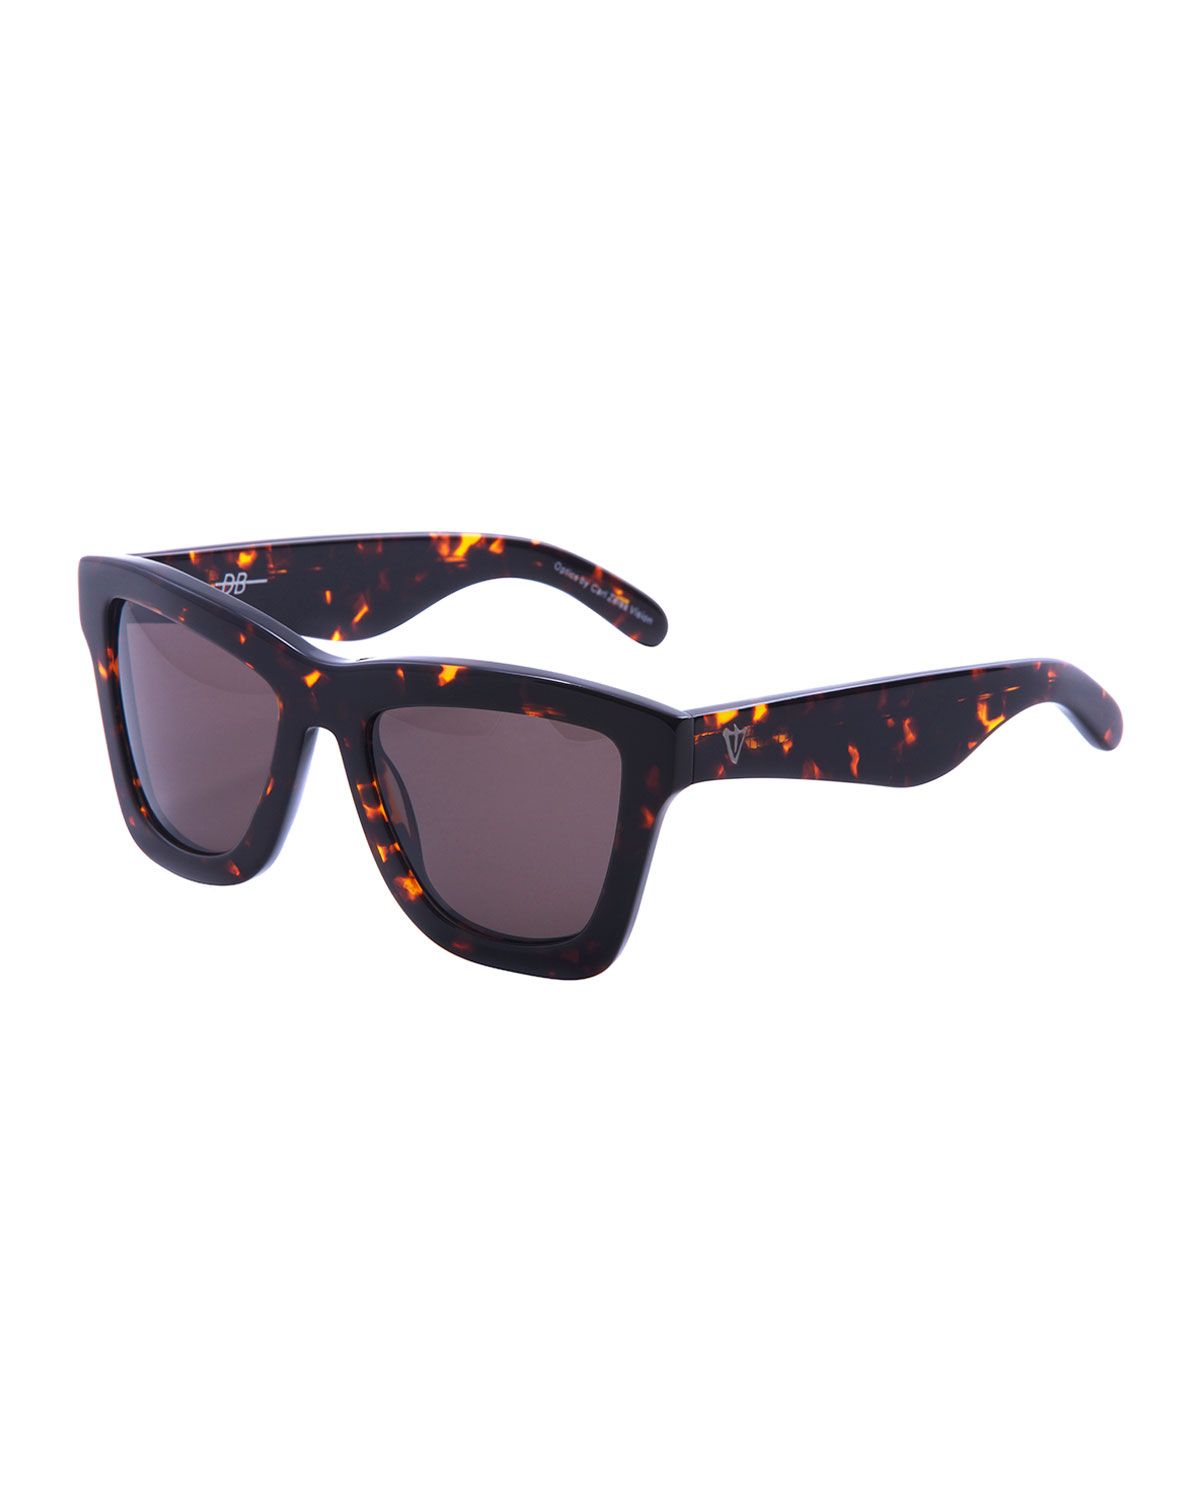 DB Square Gradient Sunglasses, Brown Tortoise | Neiman Marcus